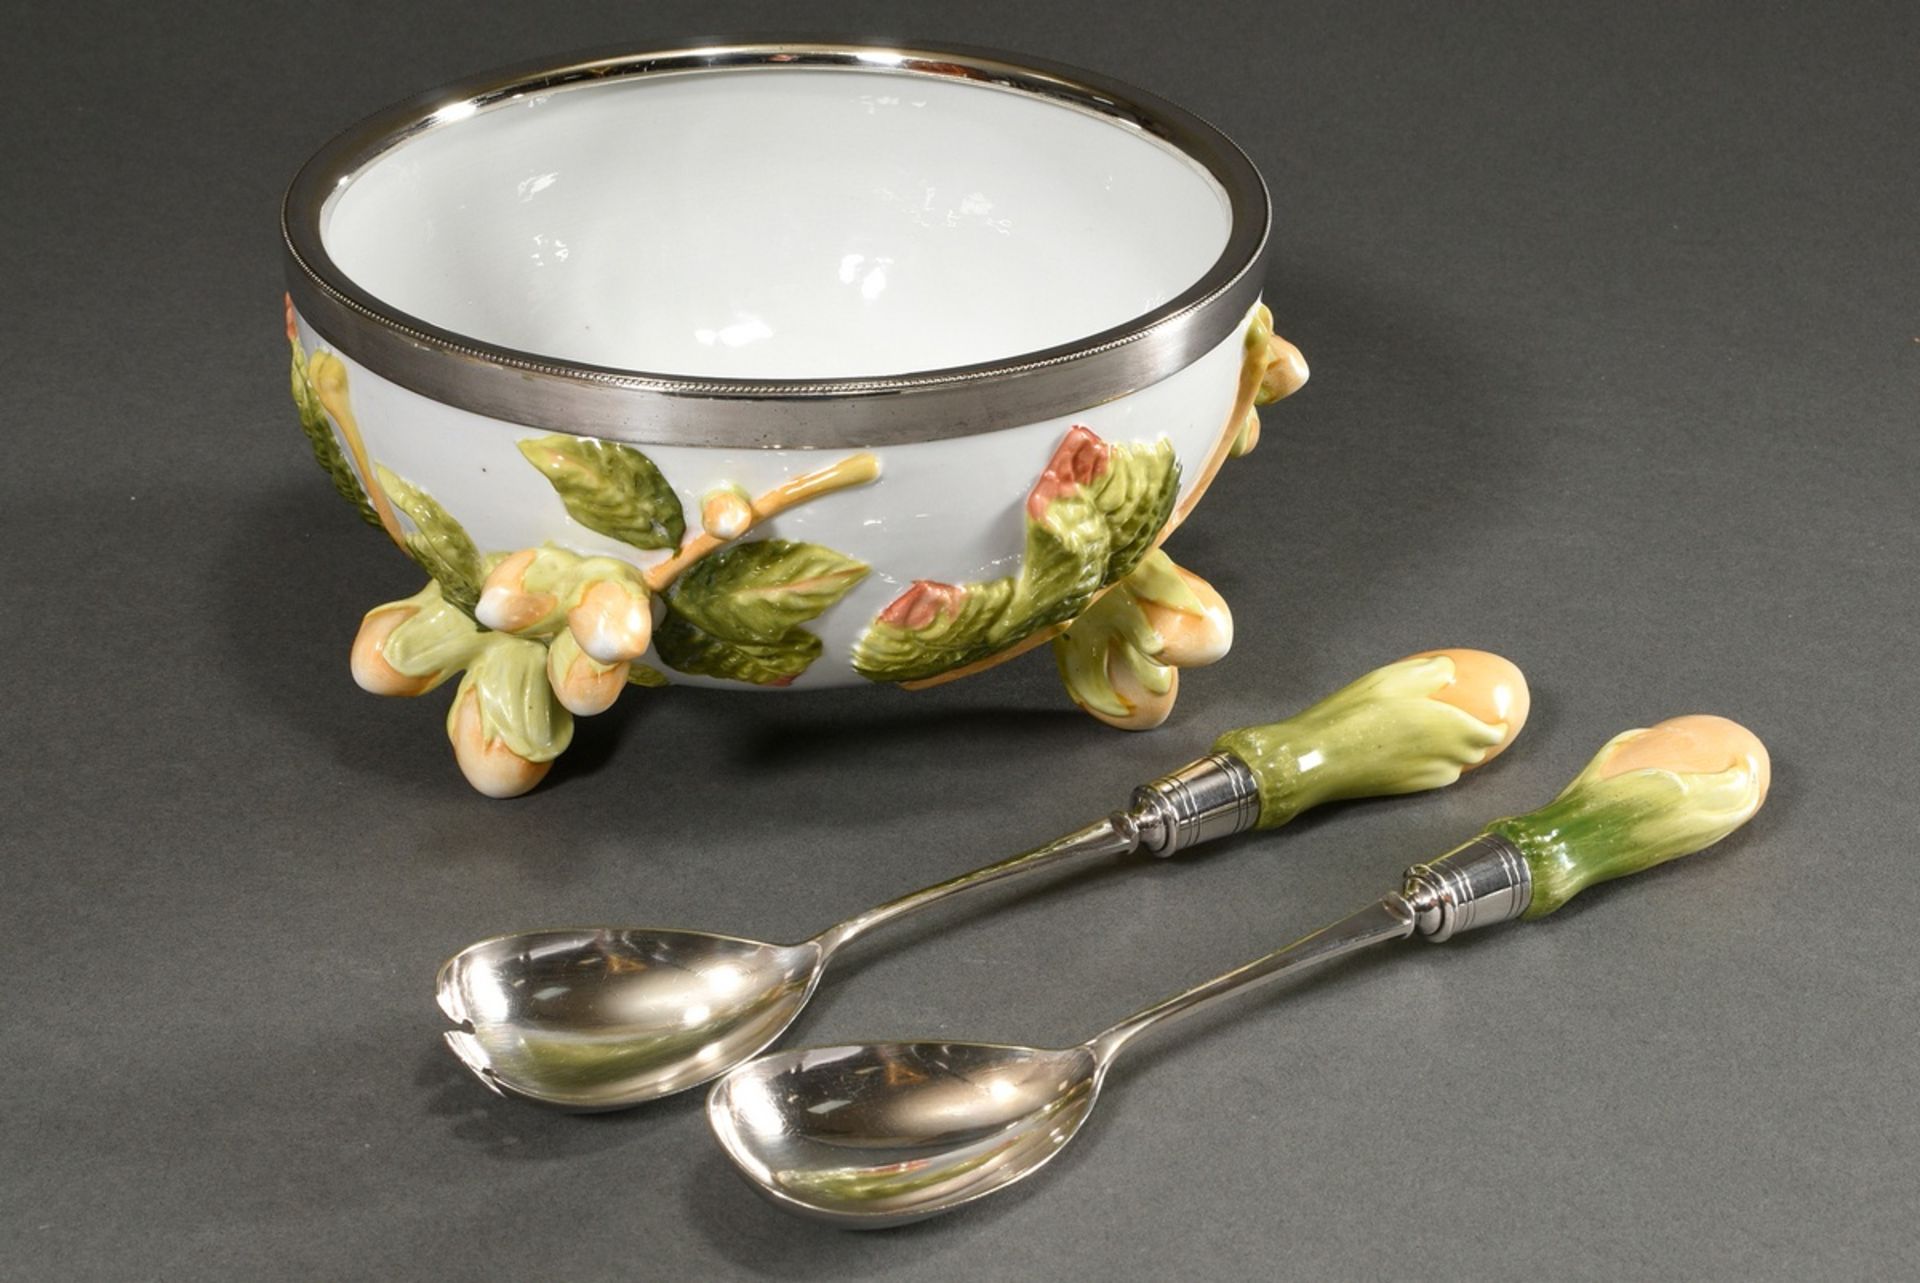 3 Pieces porcelain salad bowl (Ø 21,5cm) and servers (l. 12cm) with sculpted hazelnut decor, color  - Image 2 of 6